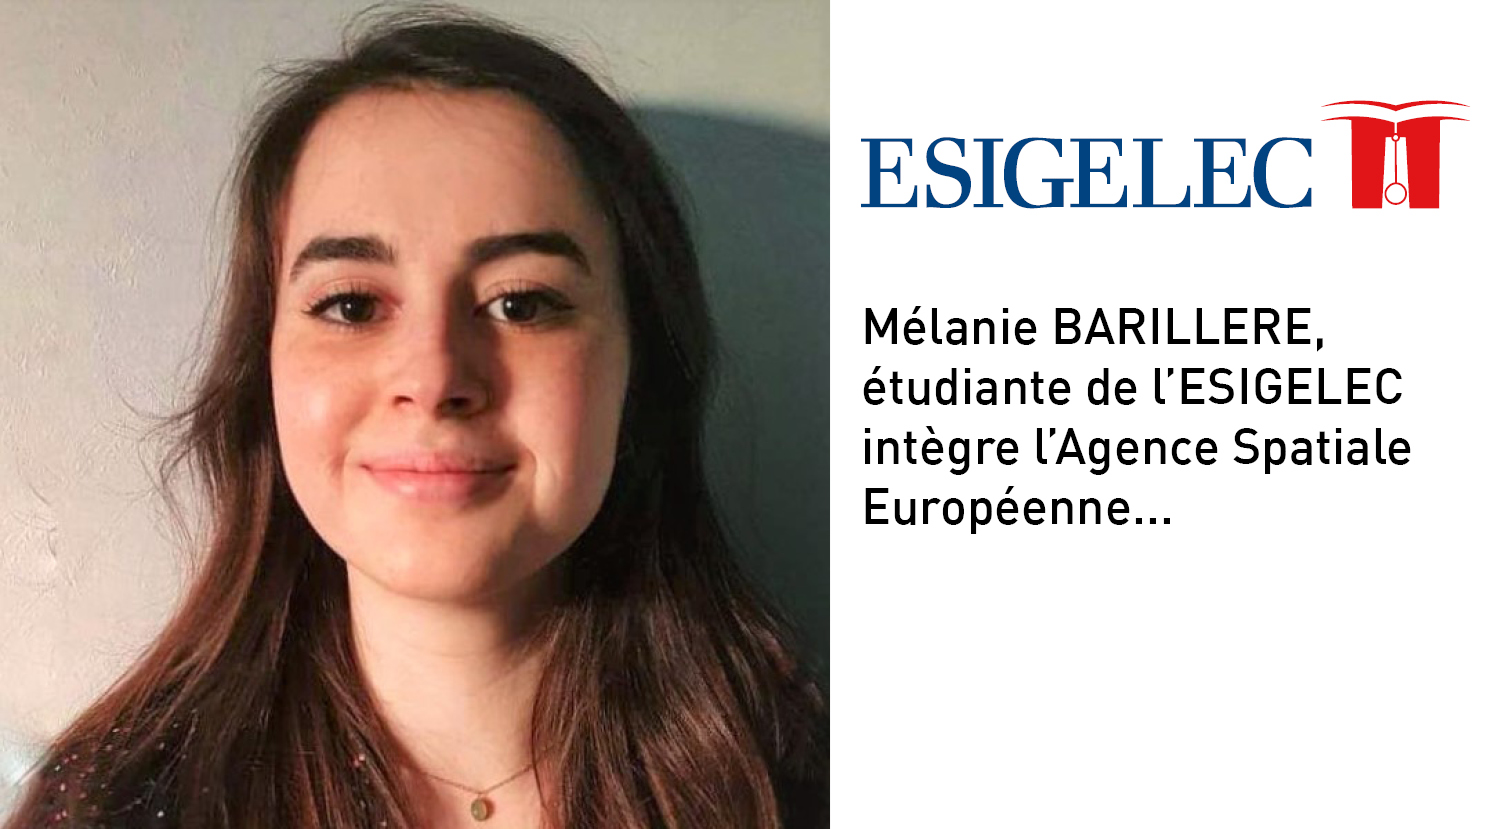 Mélanie BARILLERE, étudiante de l’ESIGELEC intègre l’Agence Spatiale Européenne